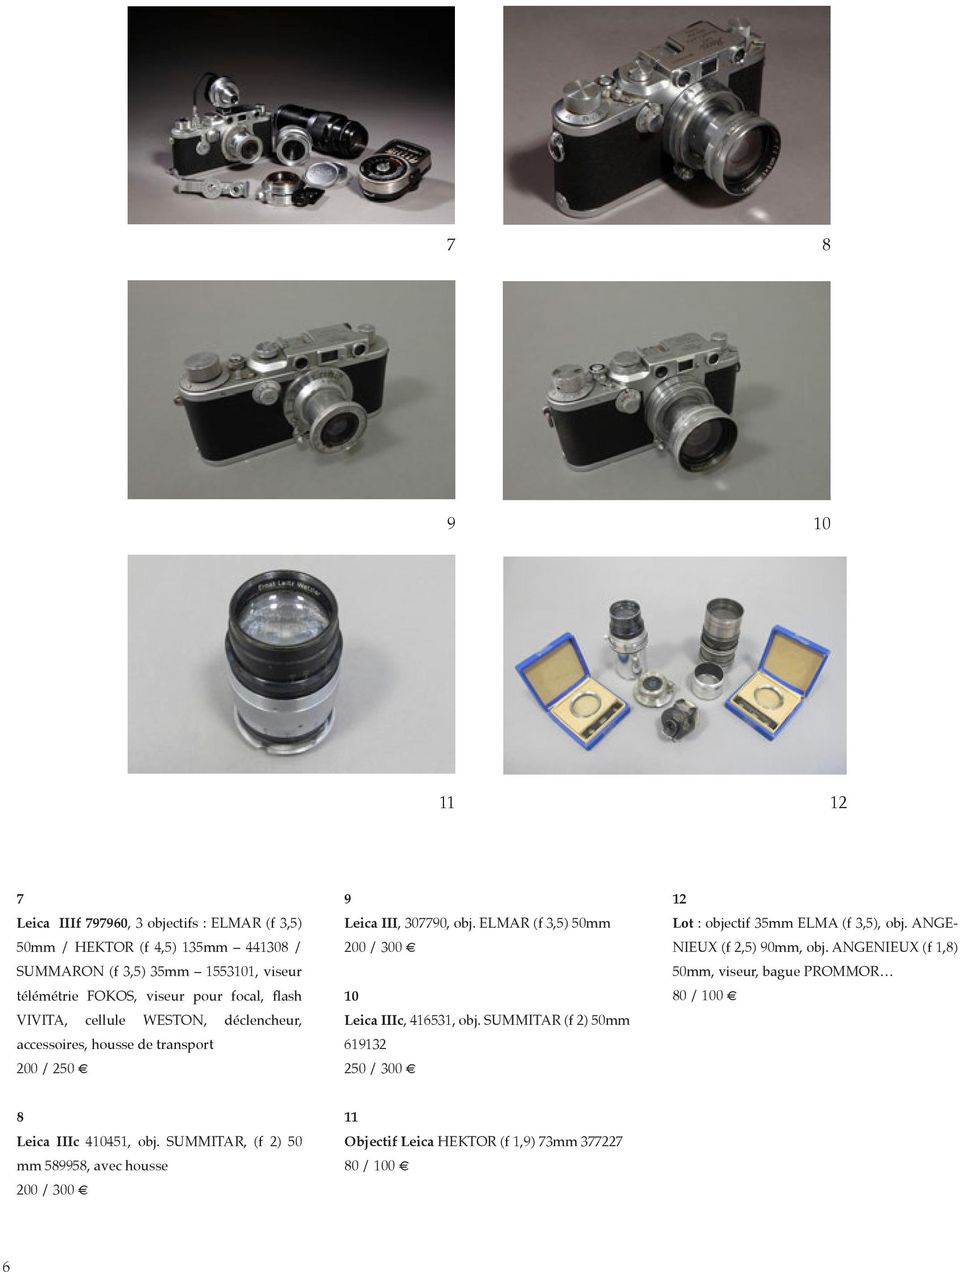 ELMAR (f 3,5) 50mm 200 / 300 10 Leica IIIc, 416531, obj. SUMMITAR (f 2) 50mm 619132 250 / 300 12 Lot : objectif 35mm ELMA (f 3,5), obj.